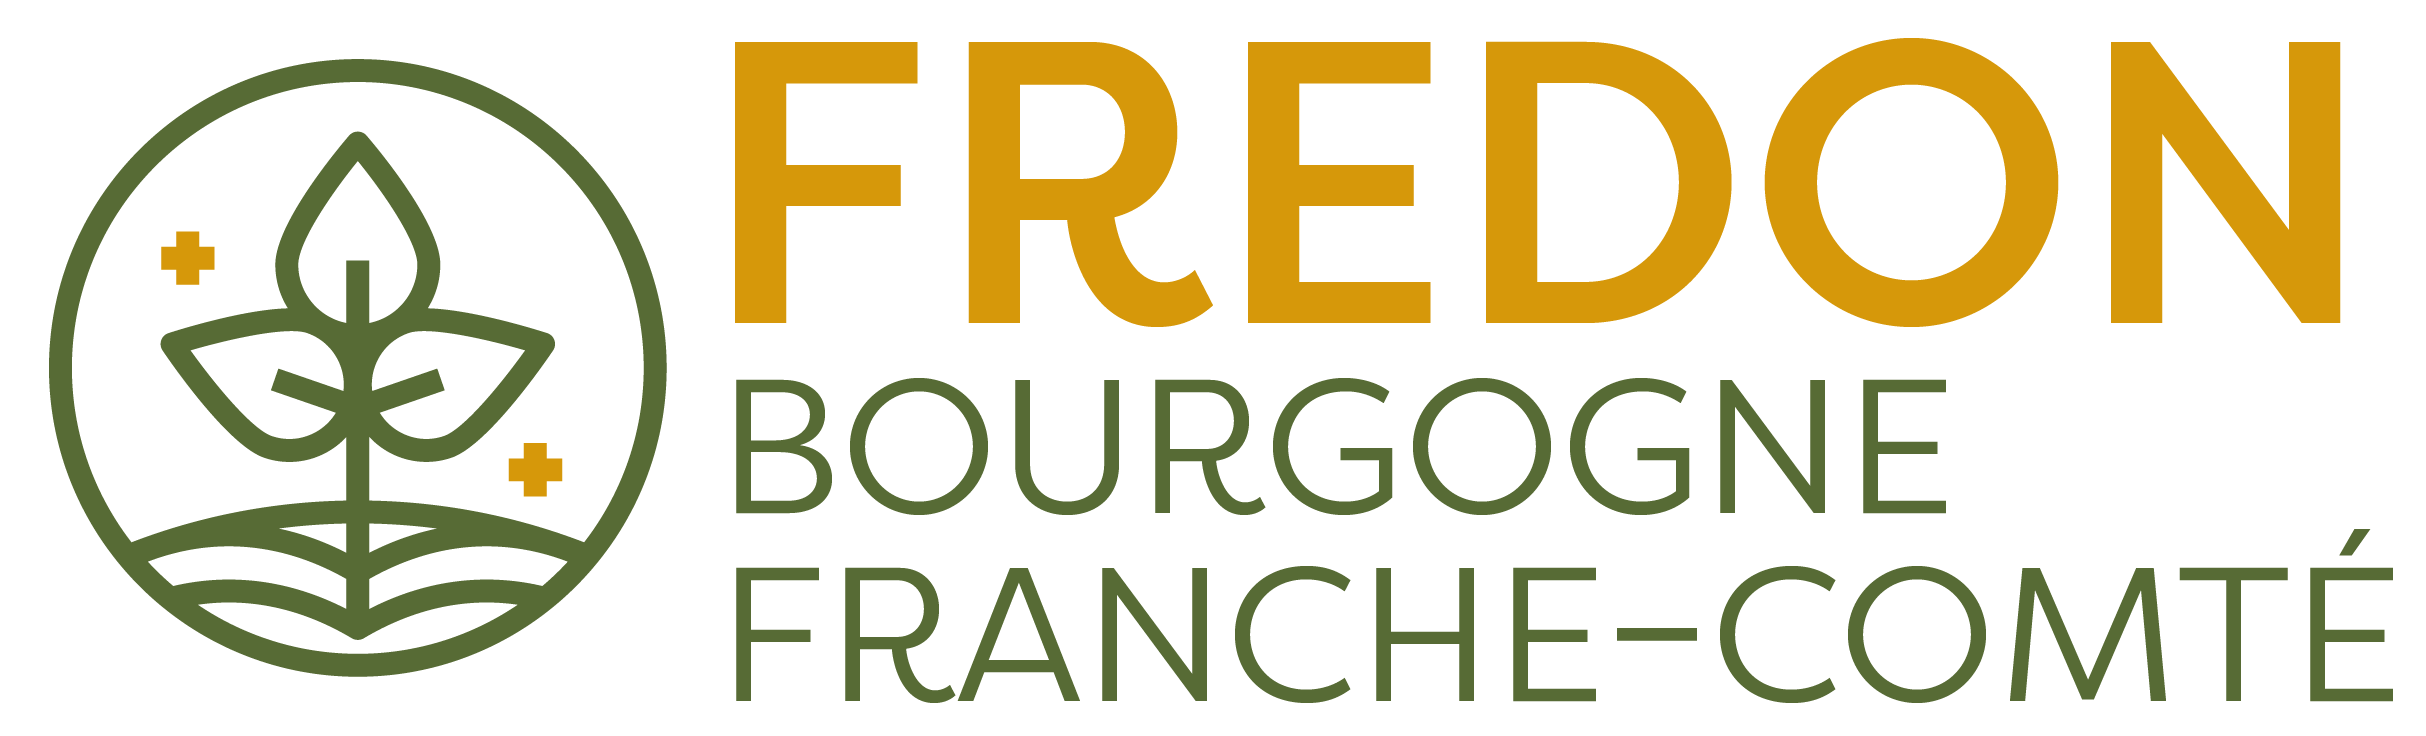 "Logo FREDON Bourgogne Franche-Comté"